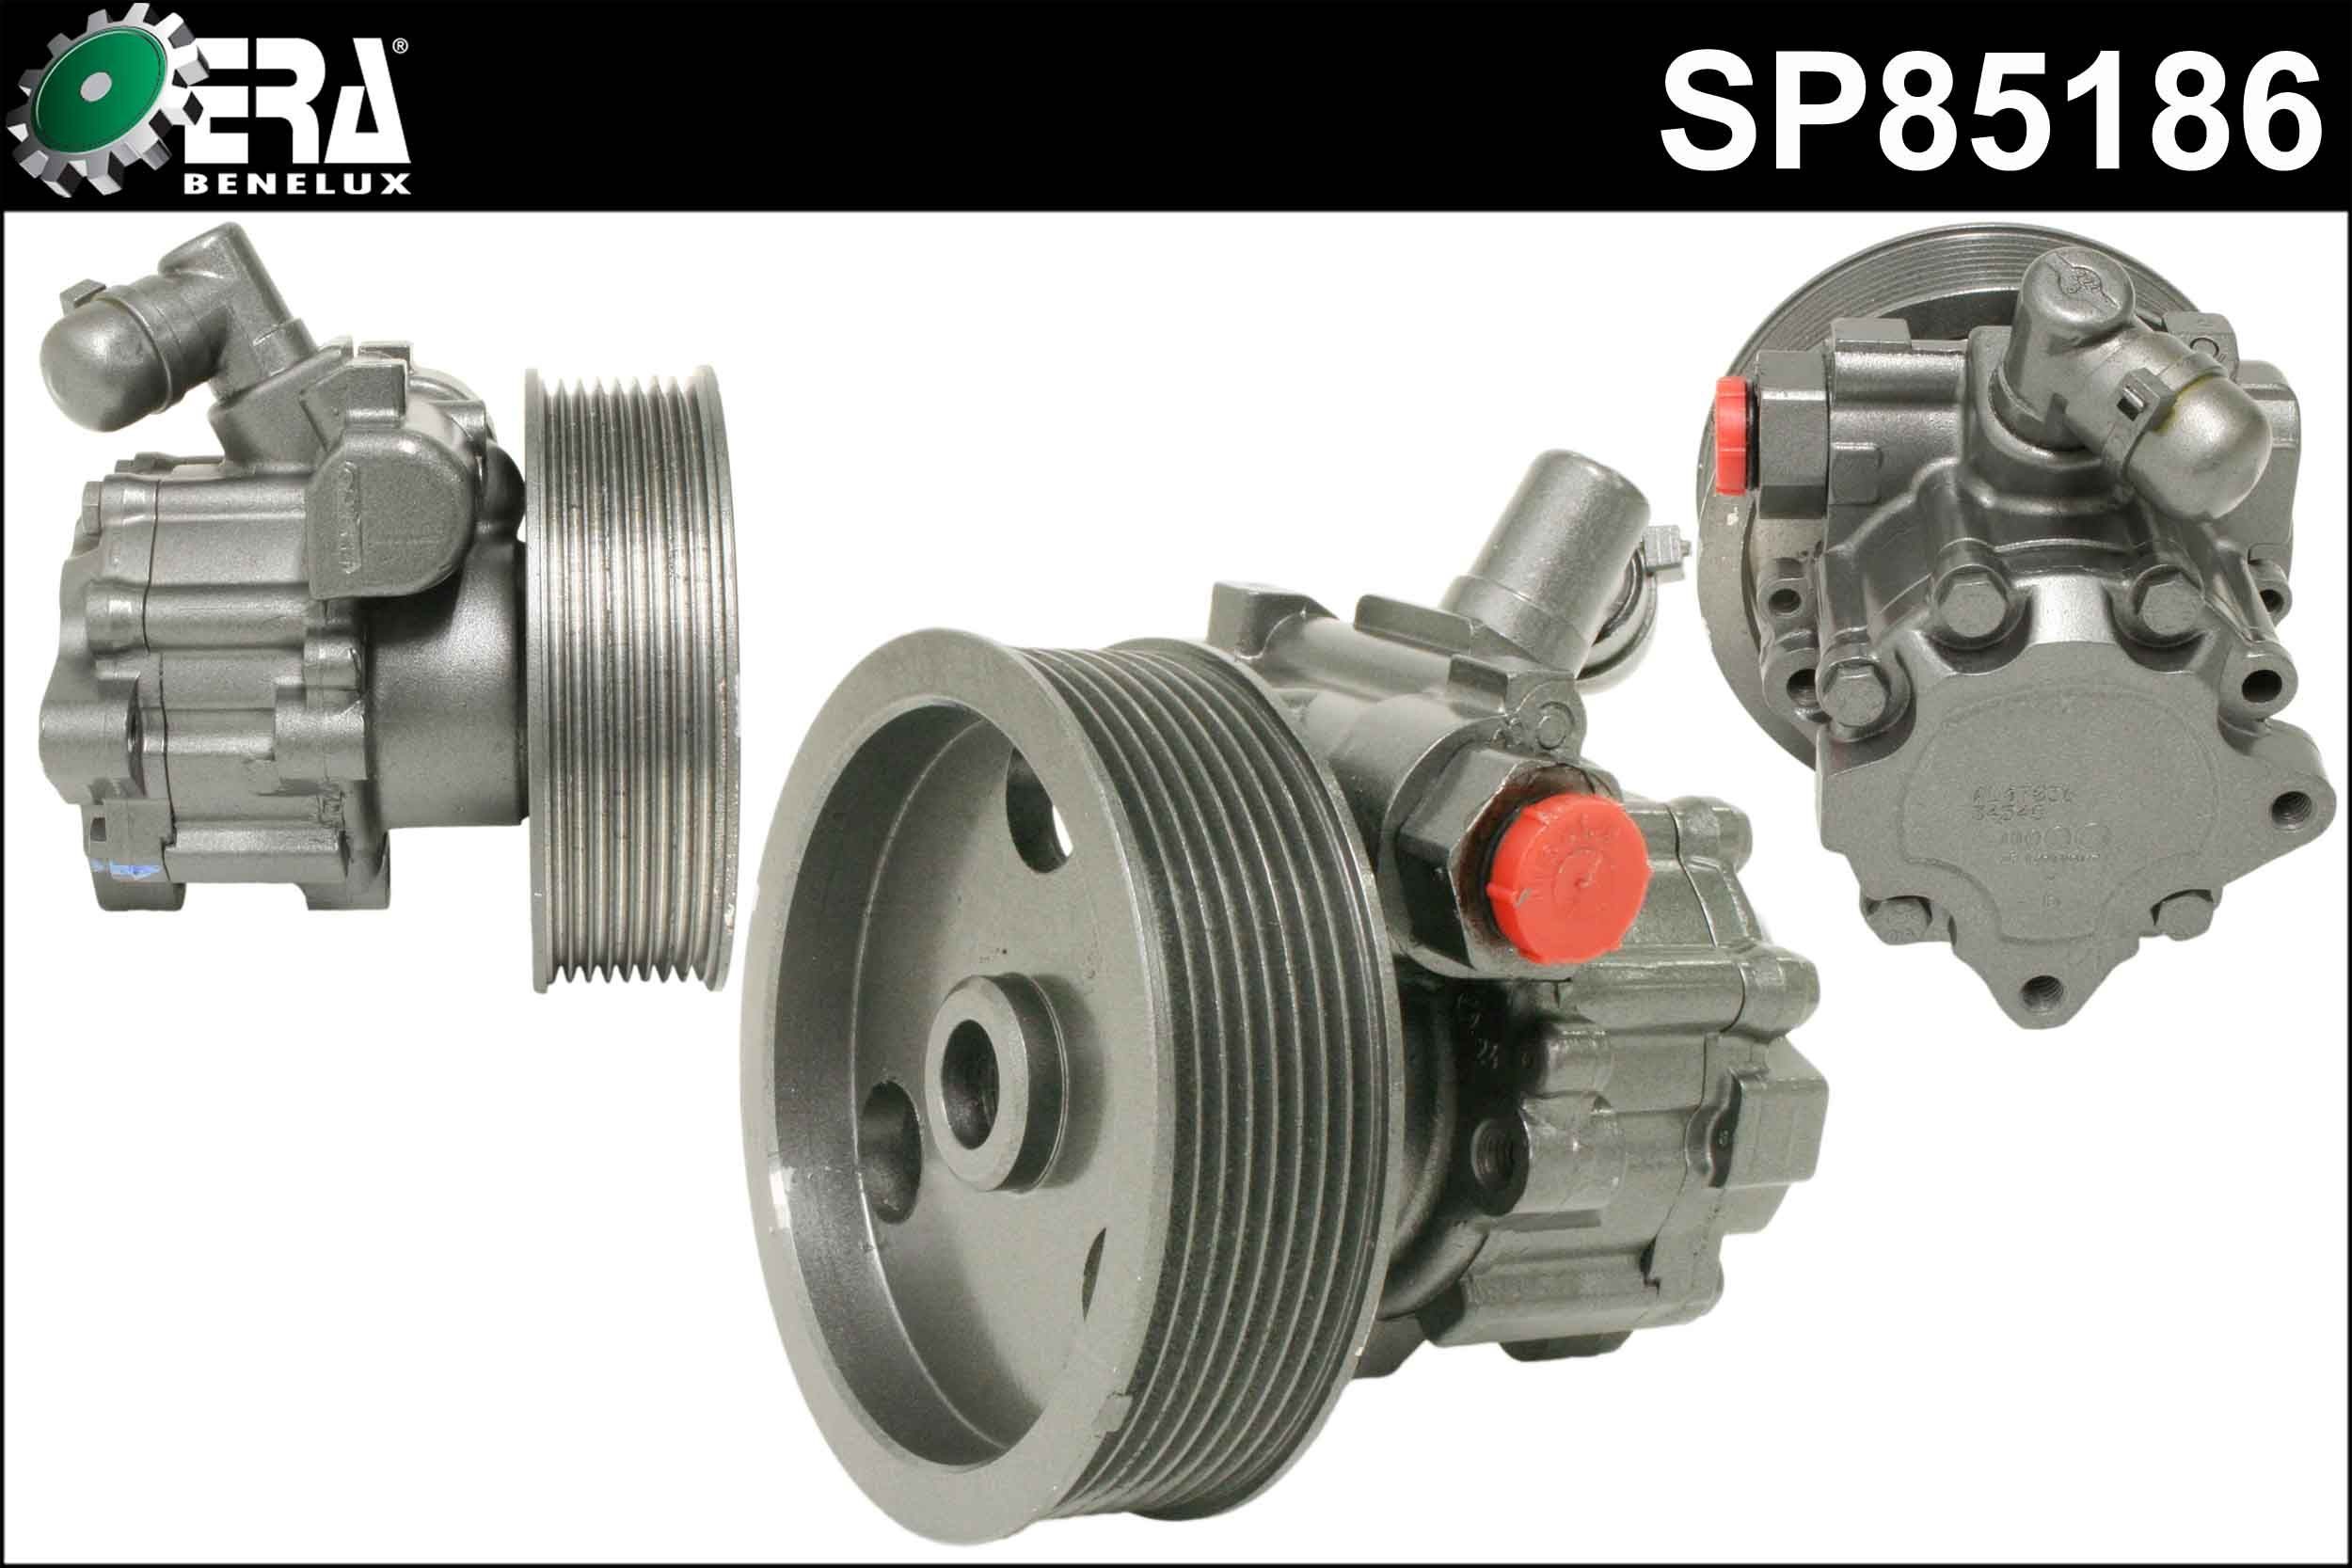 ERA Benelux SP85186 Power steering pump Number of grooves: 8